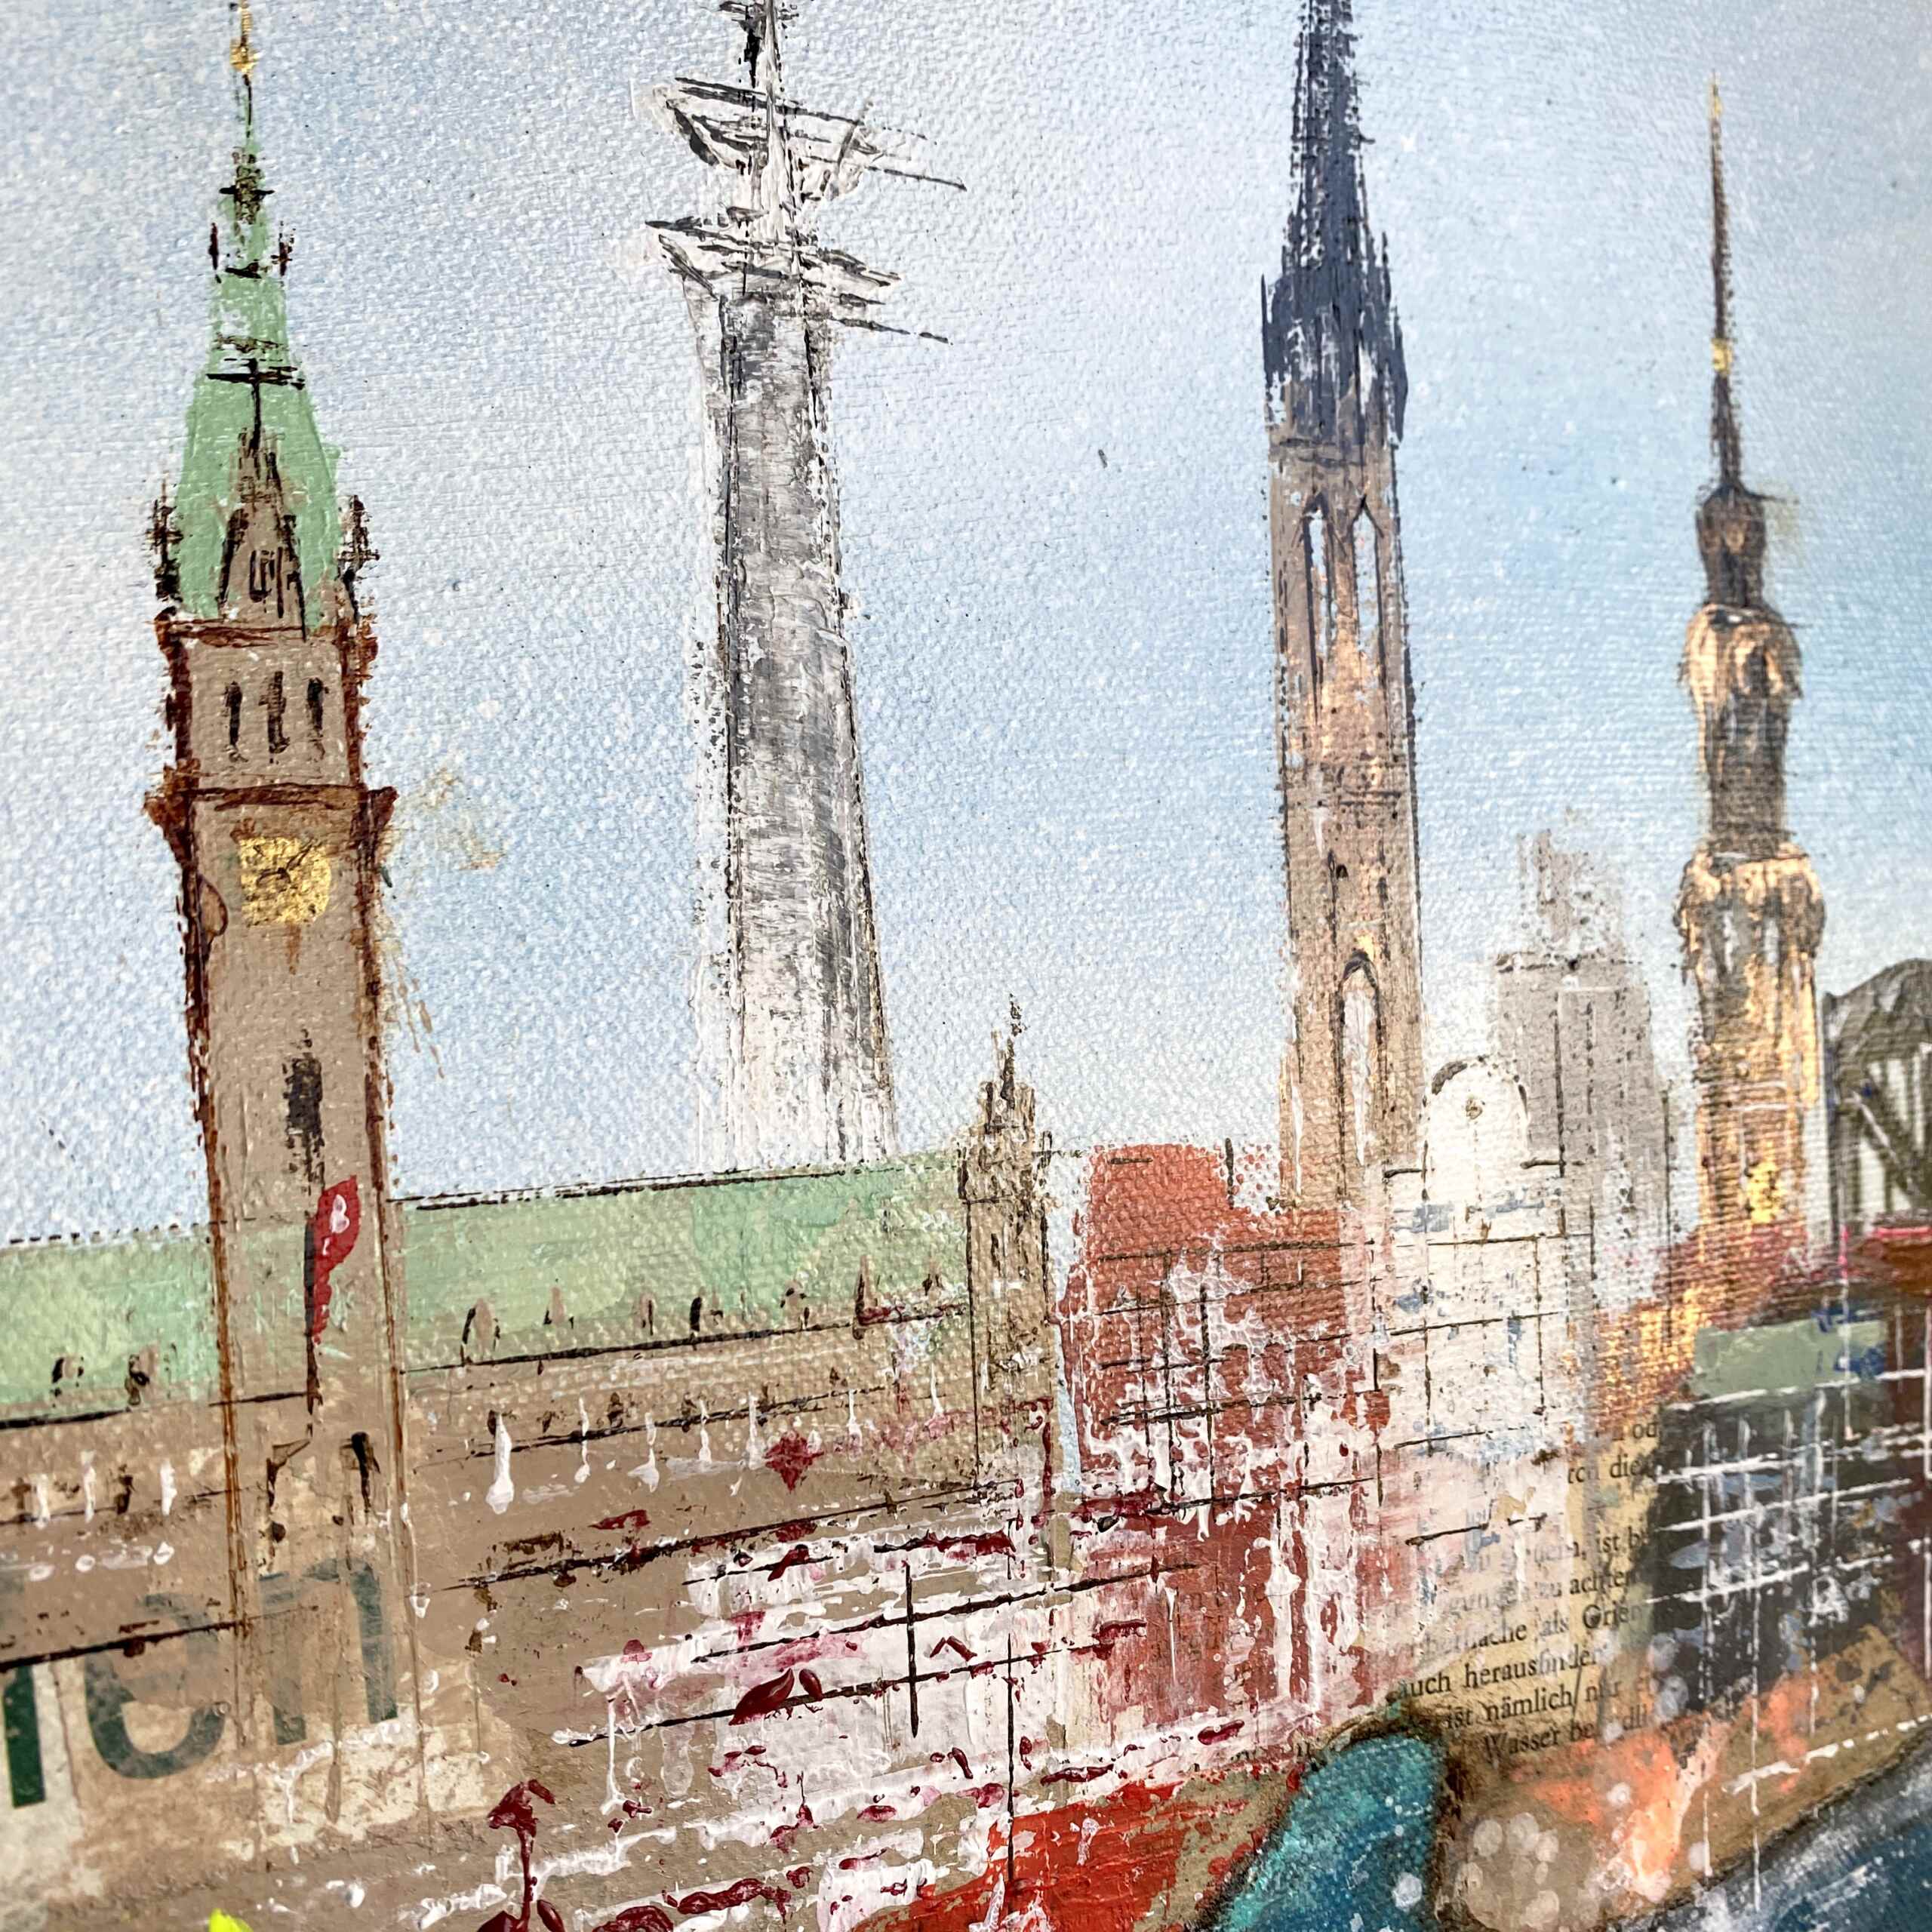 Detail of artwork "Inspiring Hamburg No 2” by Nina Groth